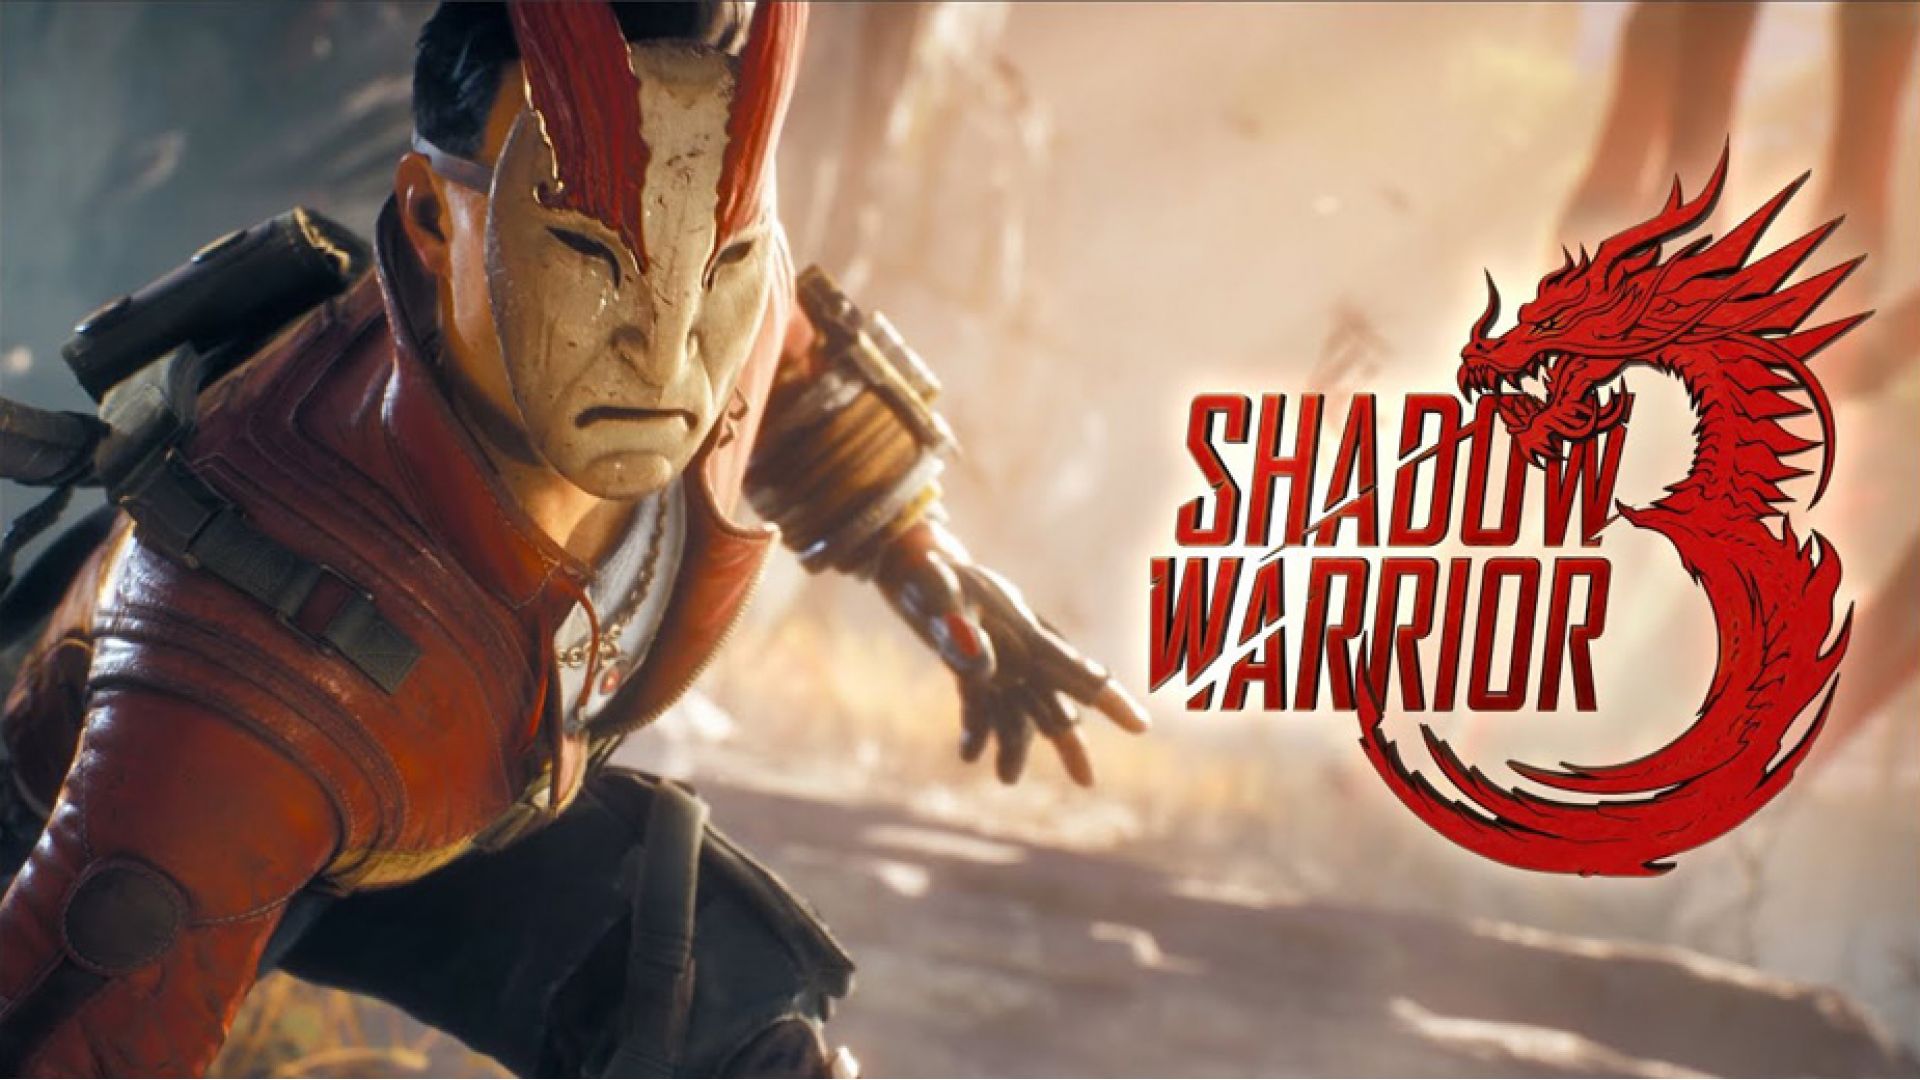 مدت زمان مورد نیاز برای اتمام بازی Shadow Warrior 3 مشخص شد